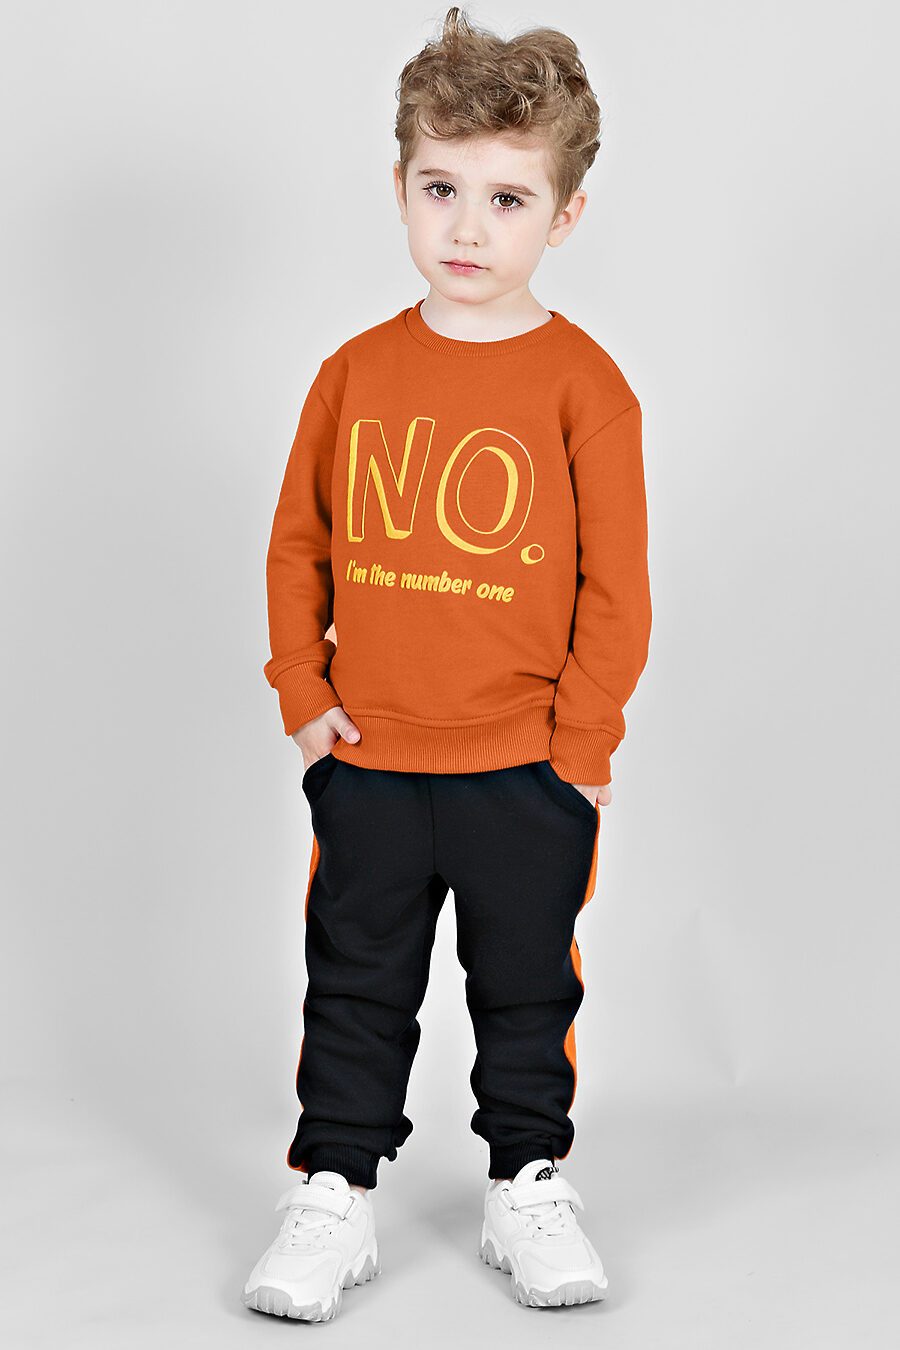 Свитшот для мальчиков BOSSA NOVA 683713 купить оптом от производителя. Совместная покупка детской одежды в OptMoyo